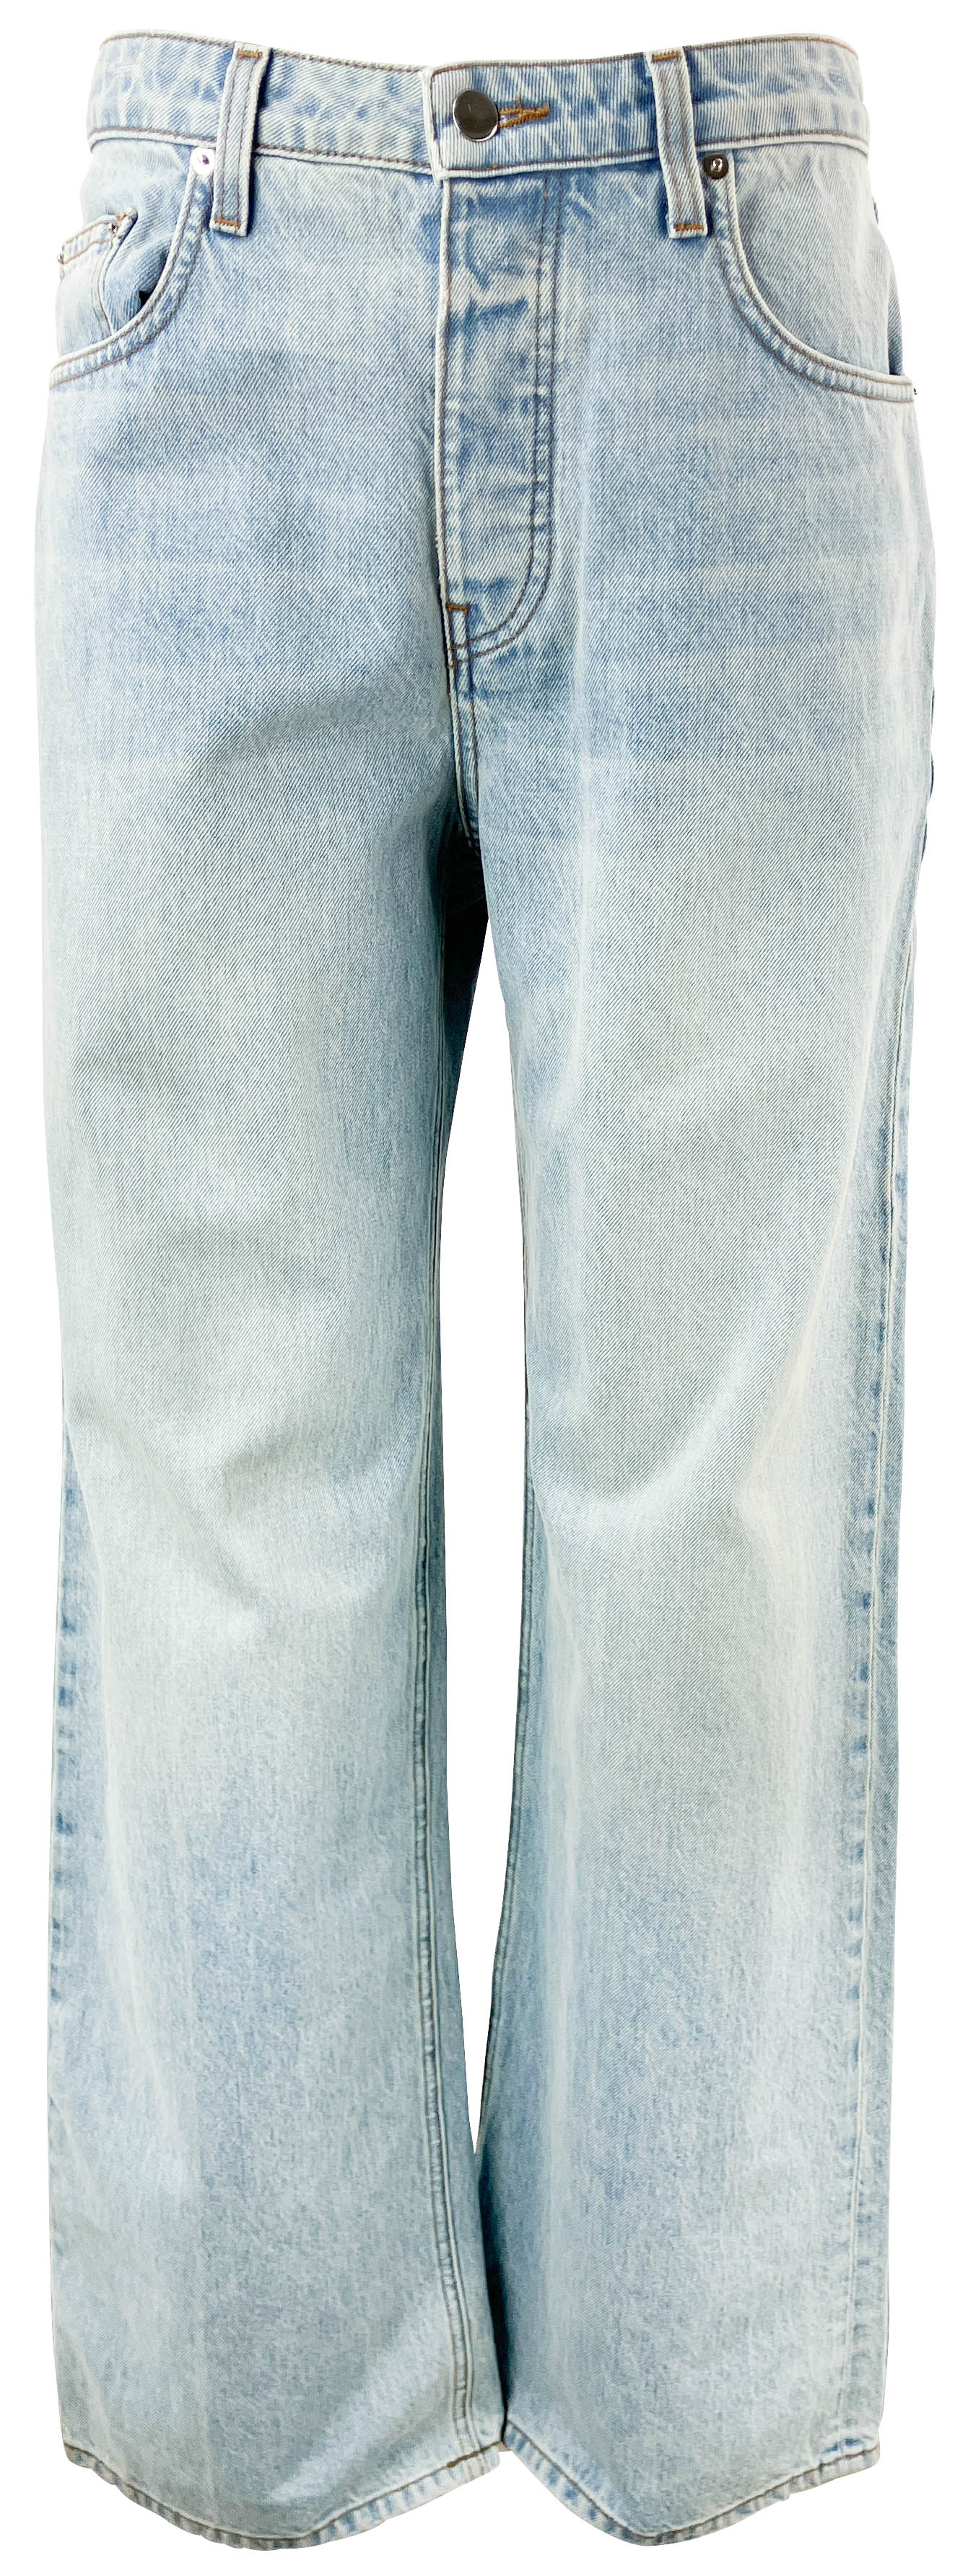 SABLYN Sammy Denim Jeans in Azure - Discounts on Sablyn at UAL